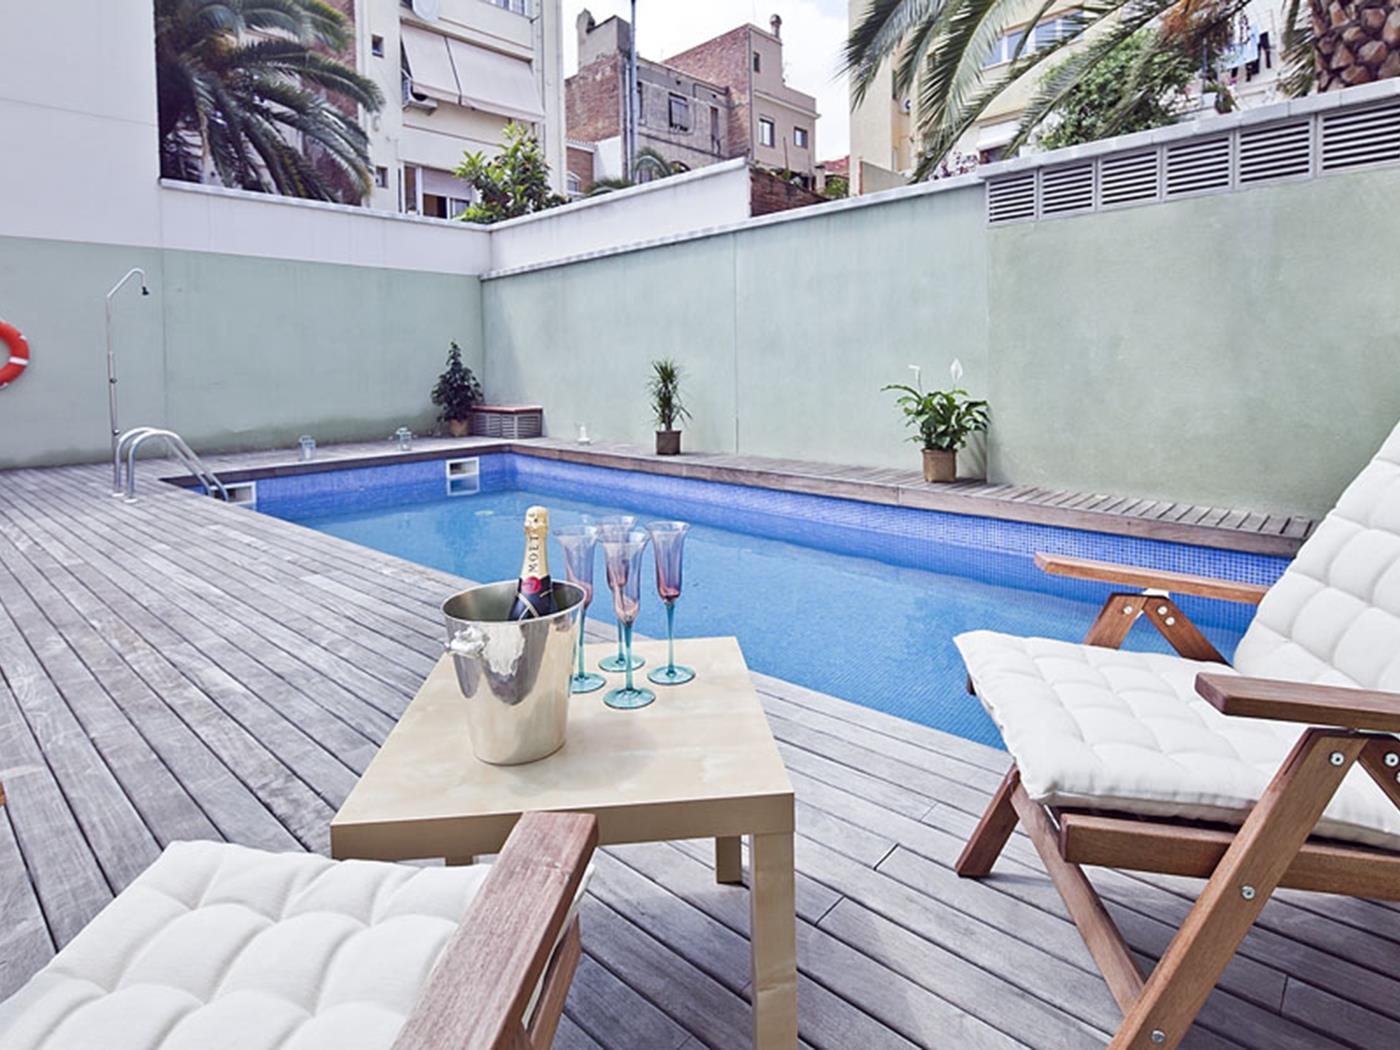 شقة علوية في غراسيا مع بركة وتراس - My Space Barcelona شقة